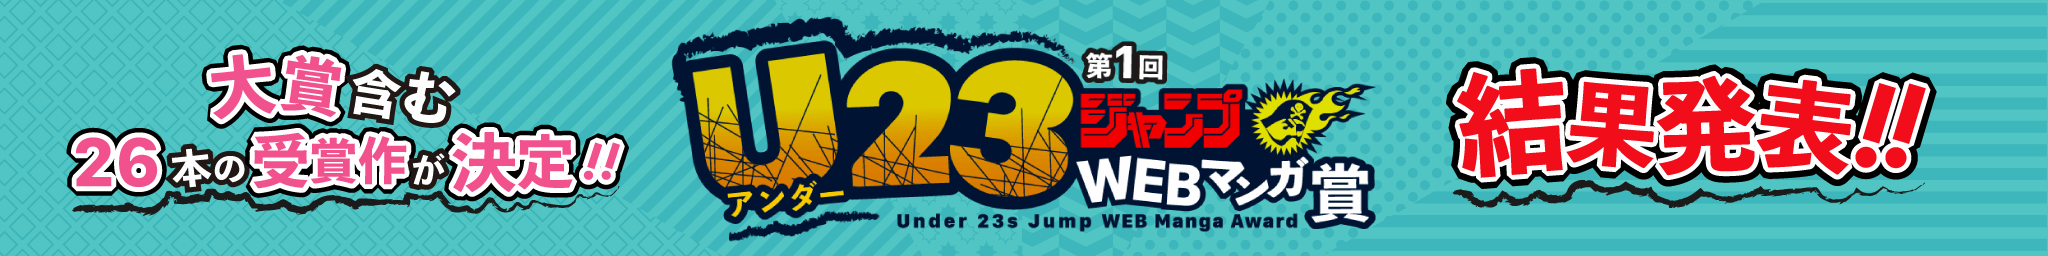 第1回U23ジャンプWEBマンガ賞の結果発表